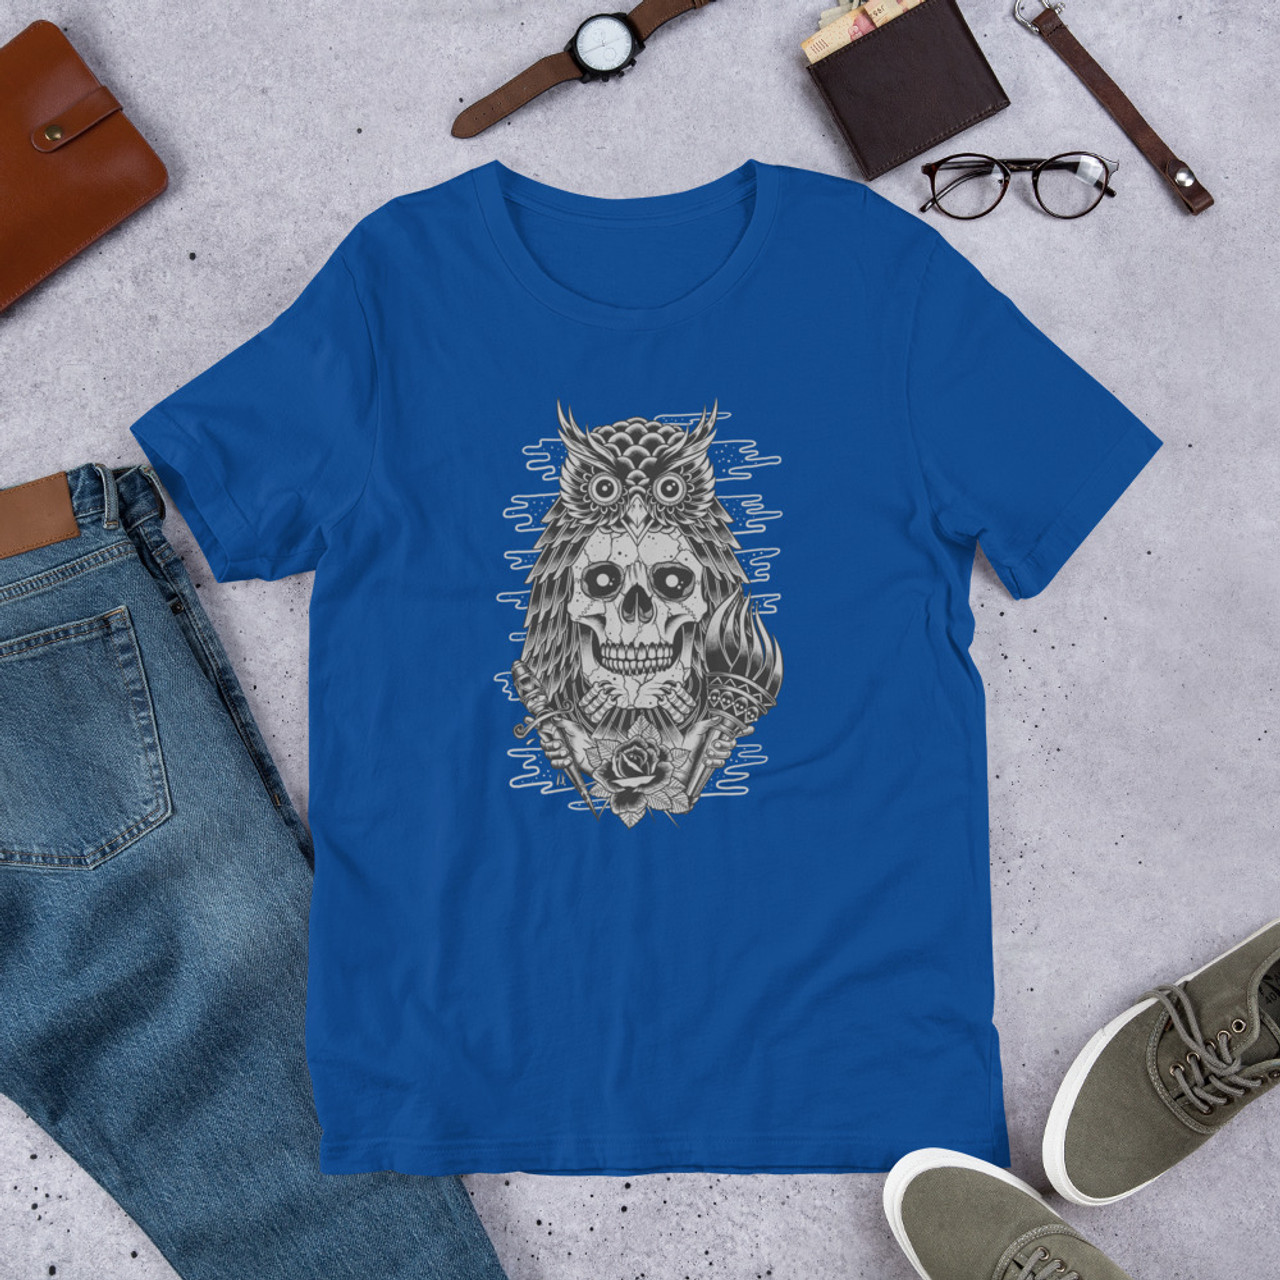 True Royal T-Shirt - Bella + Canvas 3001 Owl Skull